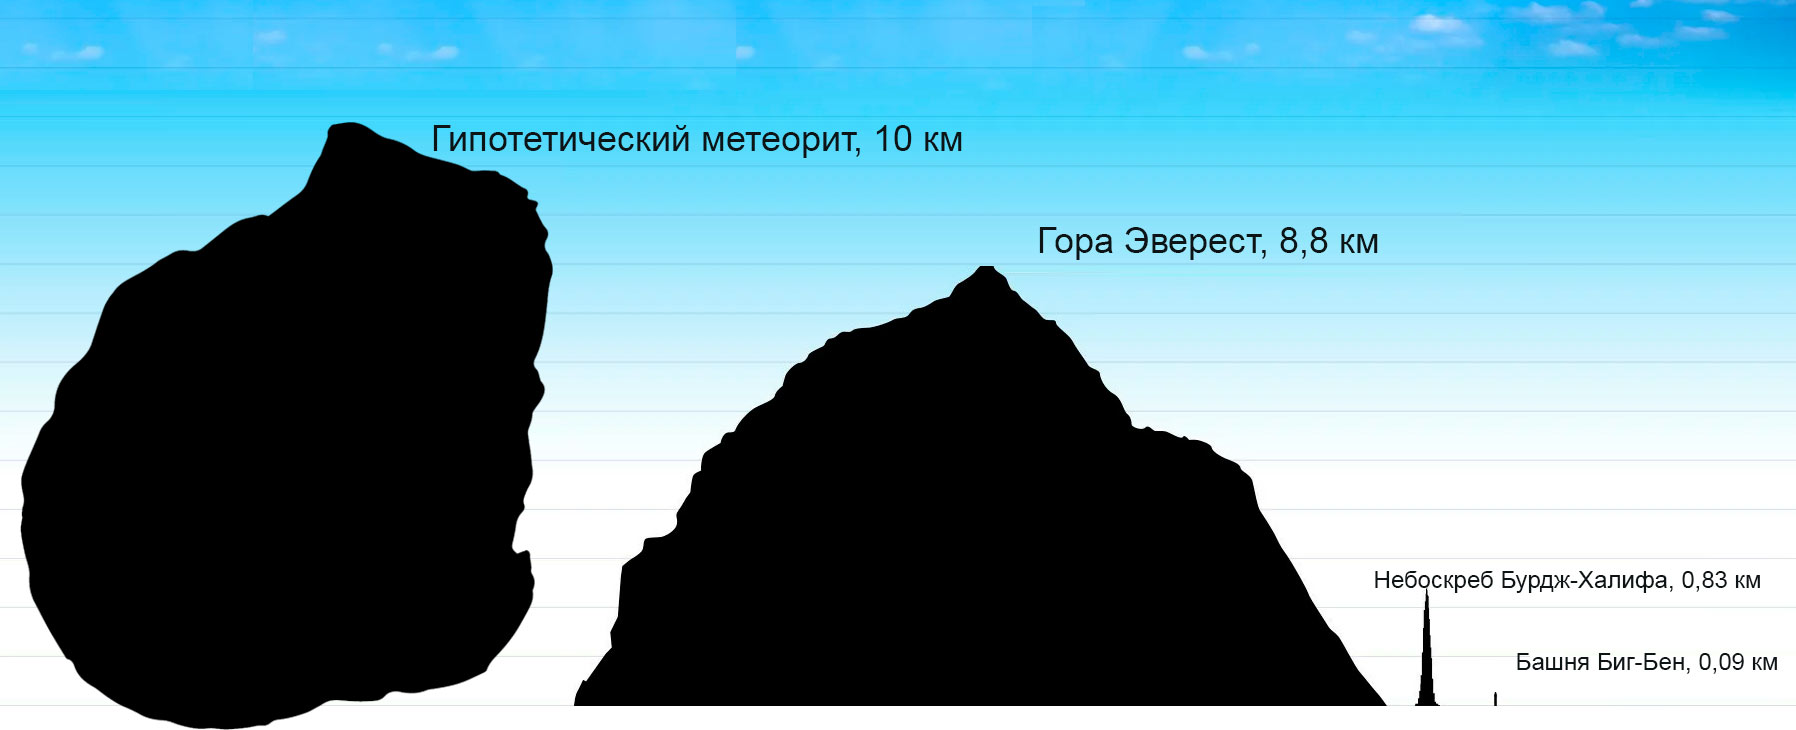 Сравнение размеров метеорита диаметром 10 км и горы Эверест